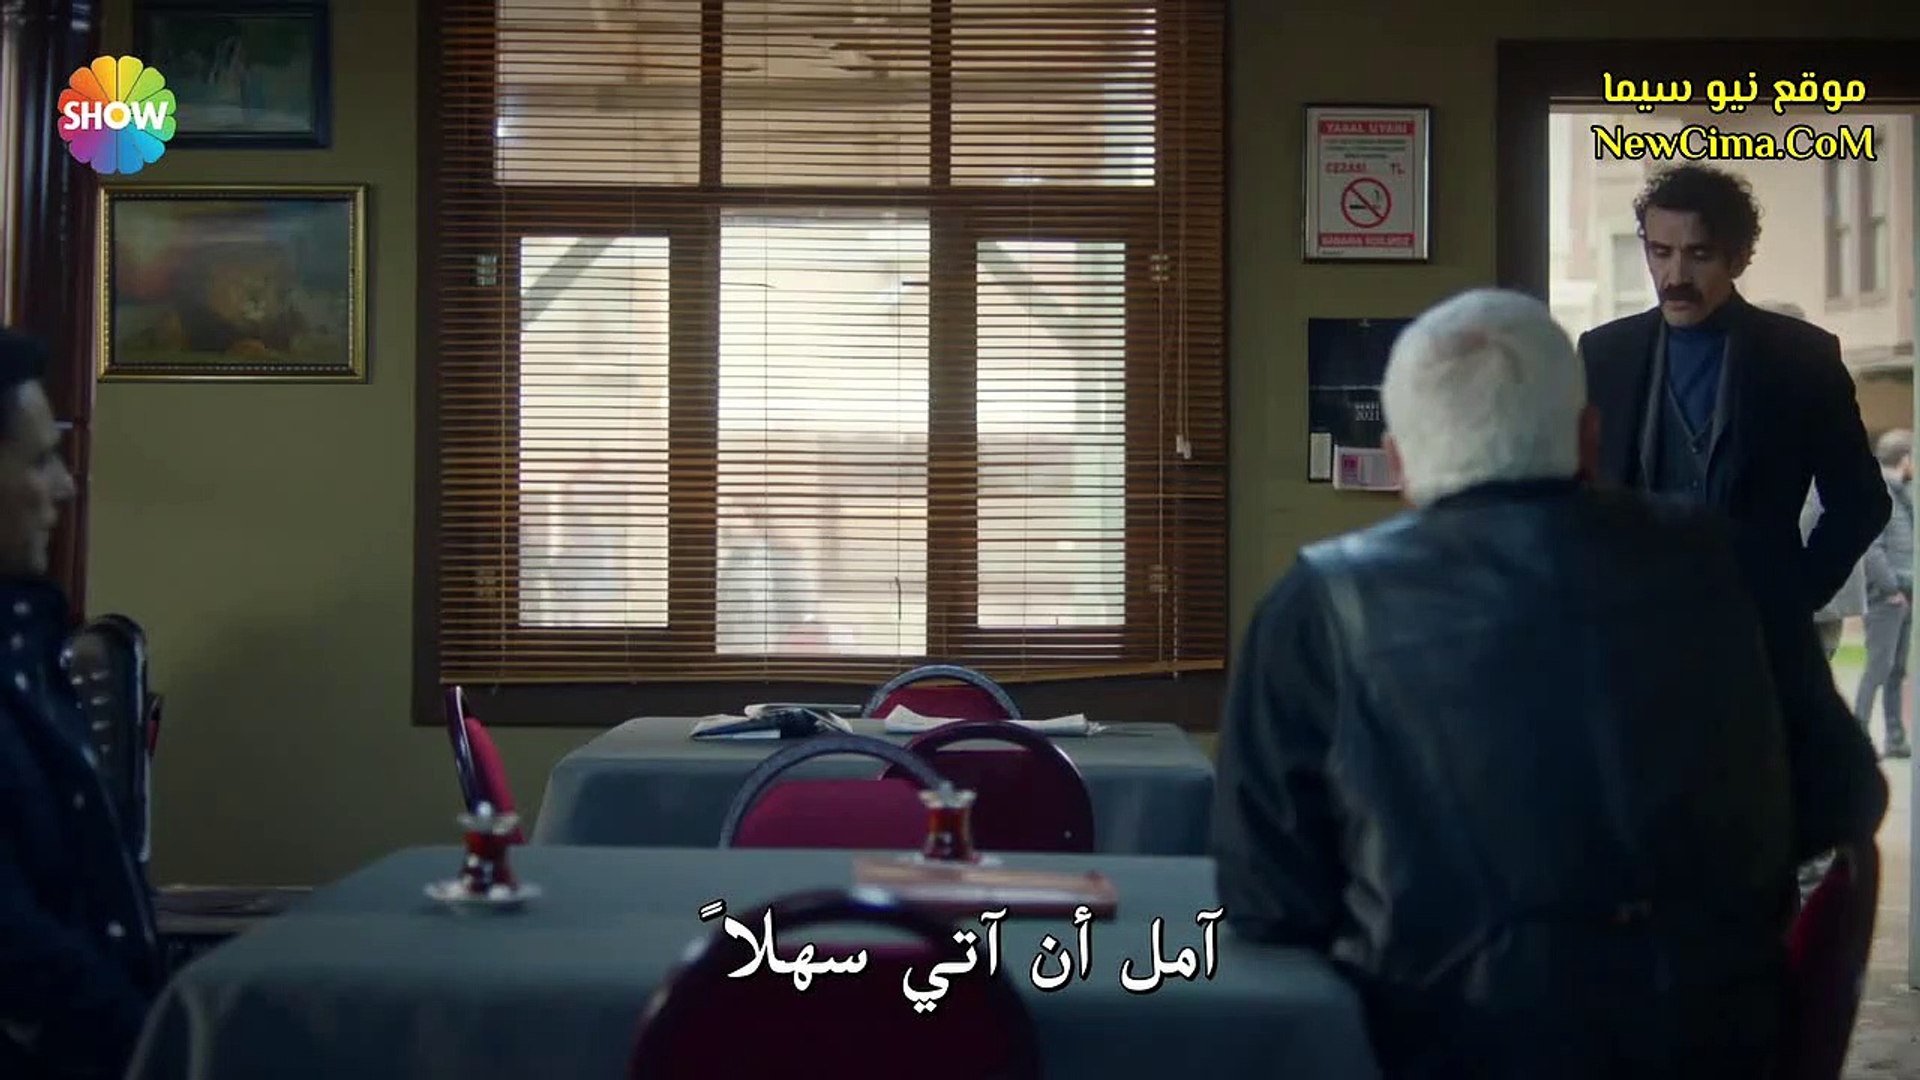 مسلسل رامو الحلقة 29 القسم 2 مترجم للعربية - فيديو Dailymotion